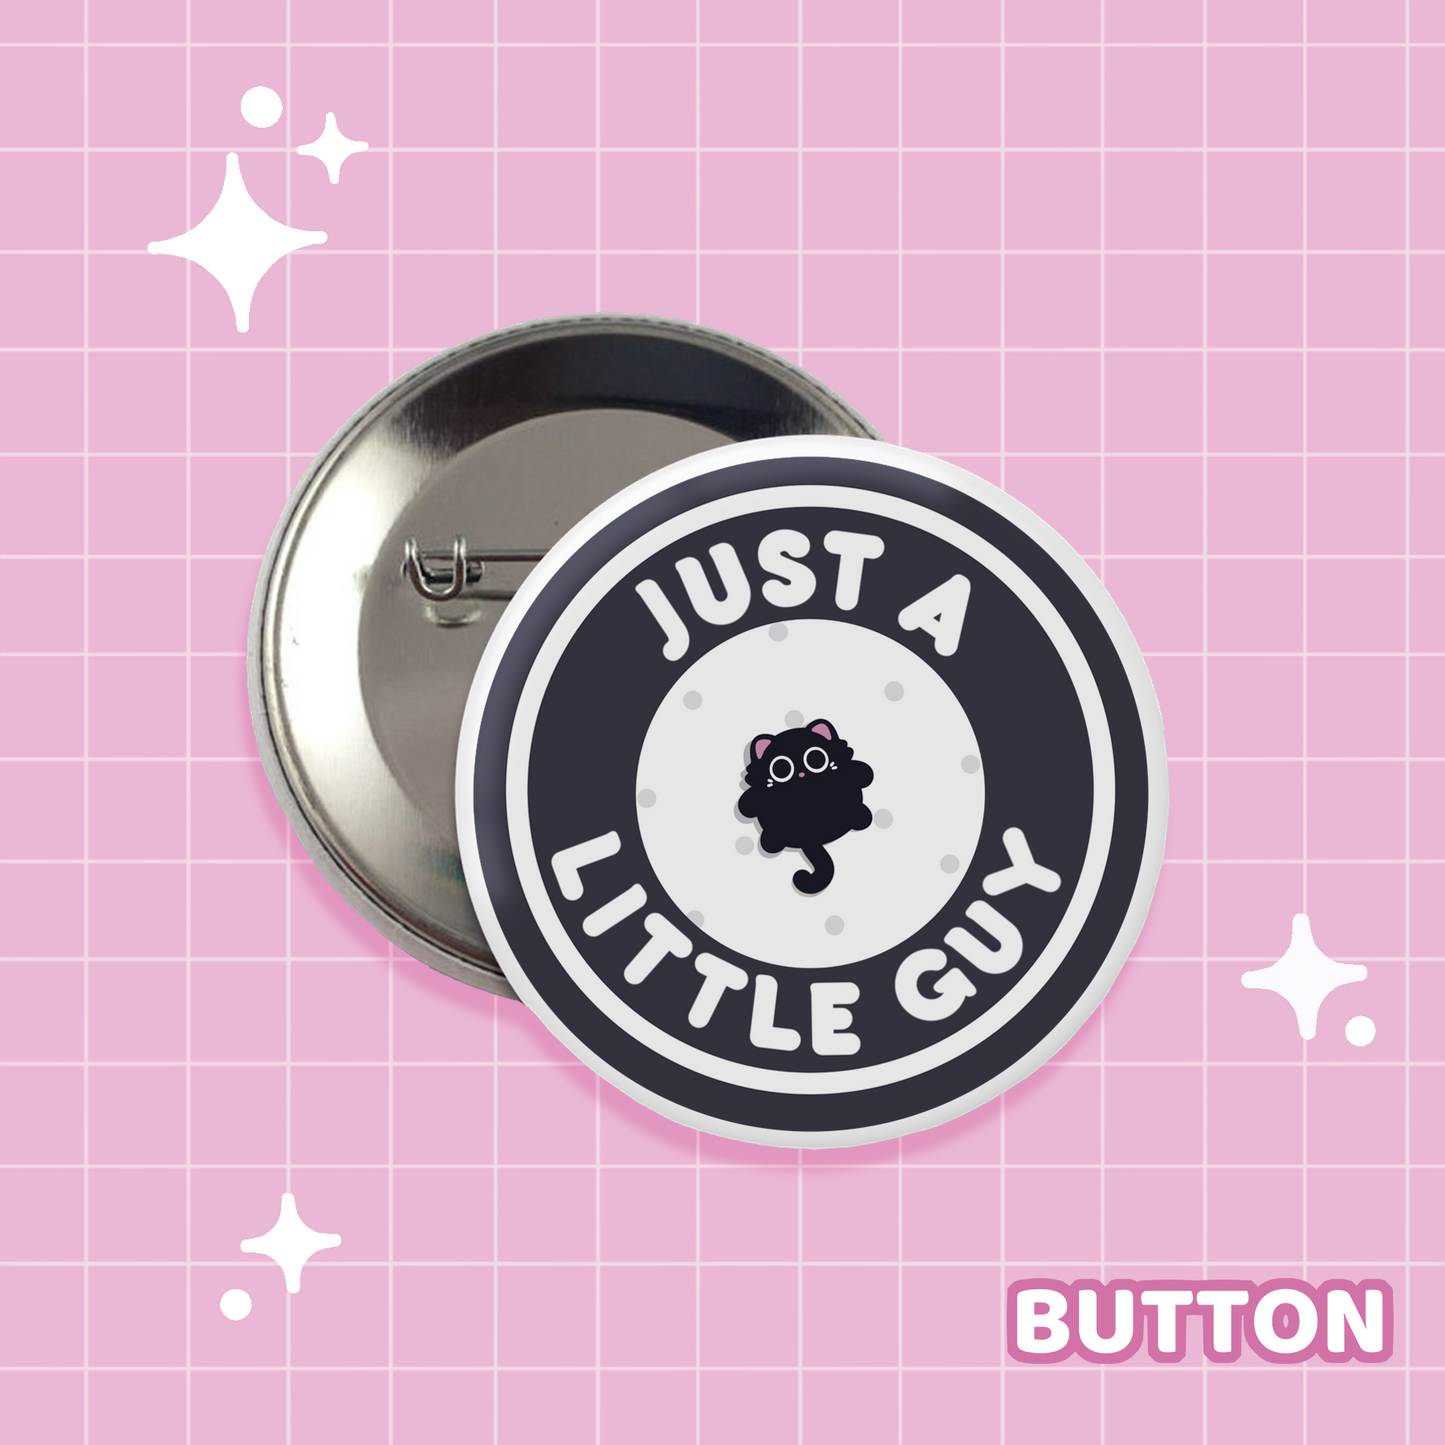 Little Guy (Black Cat) Button